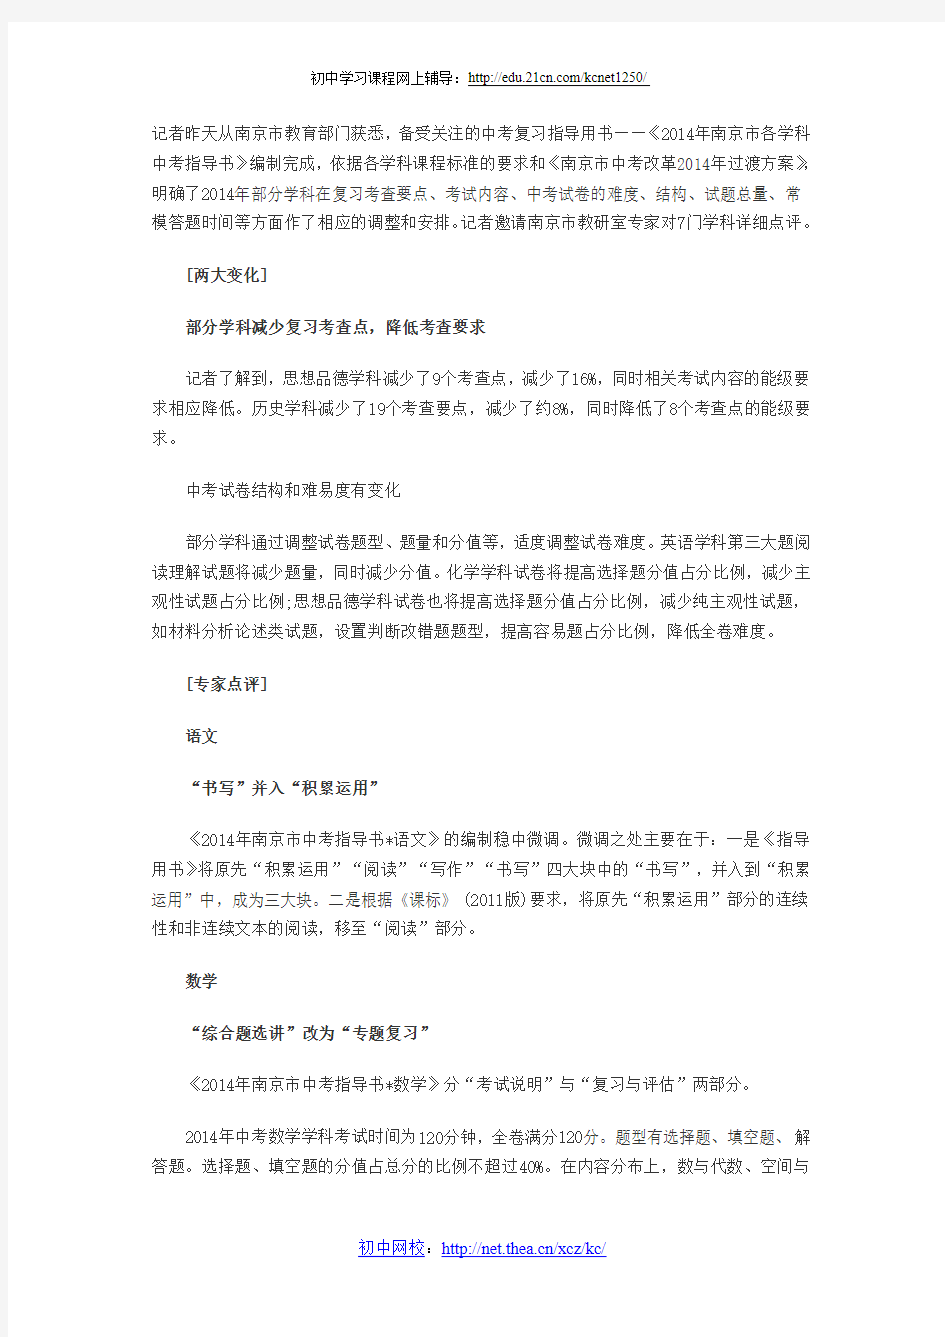 2014南京中考指导用书出炉 7大科变化解读